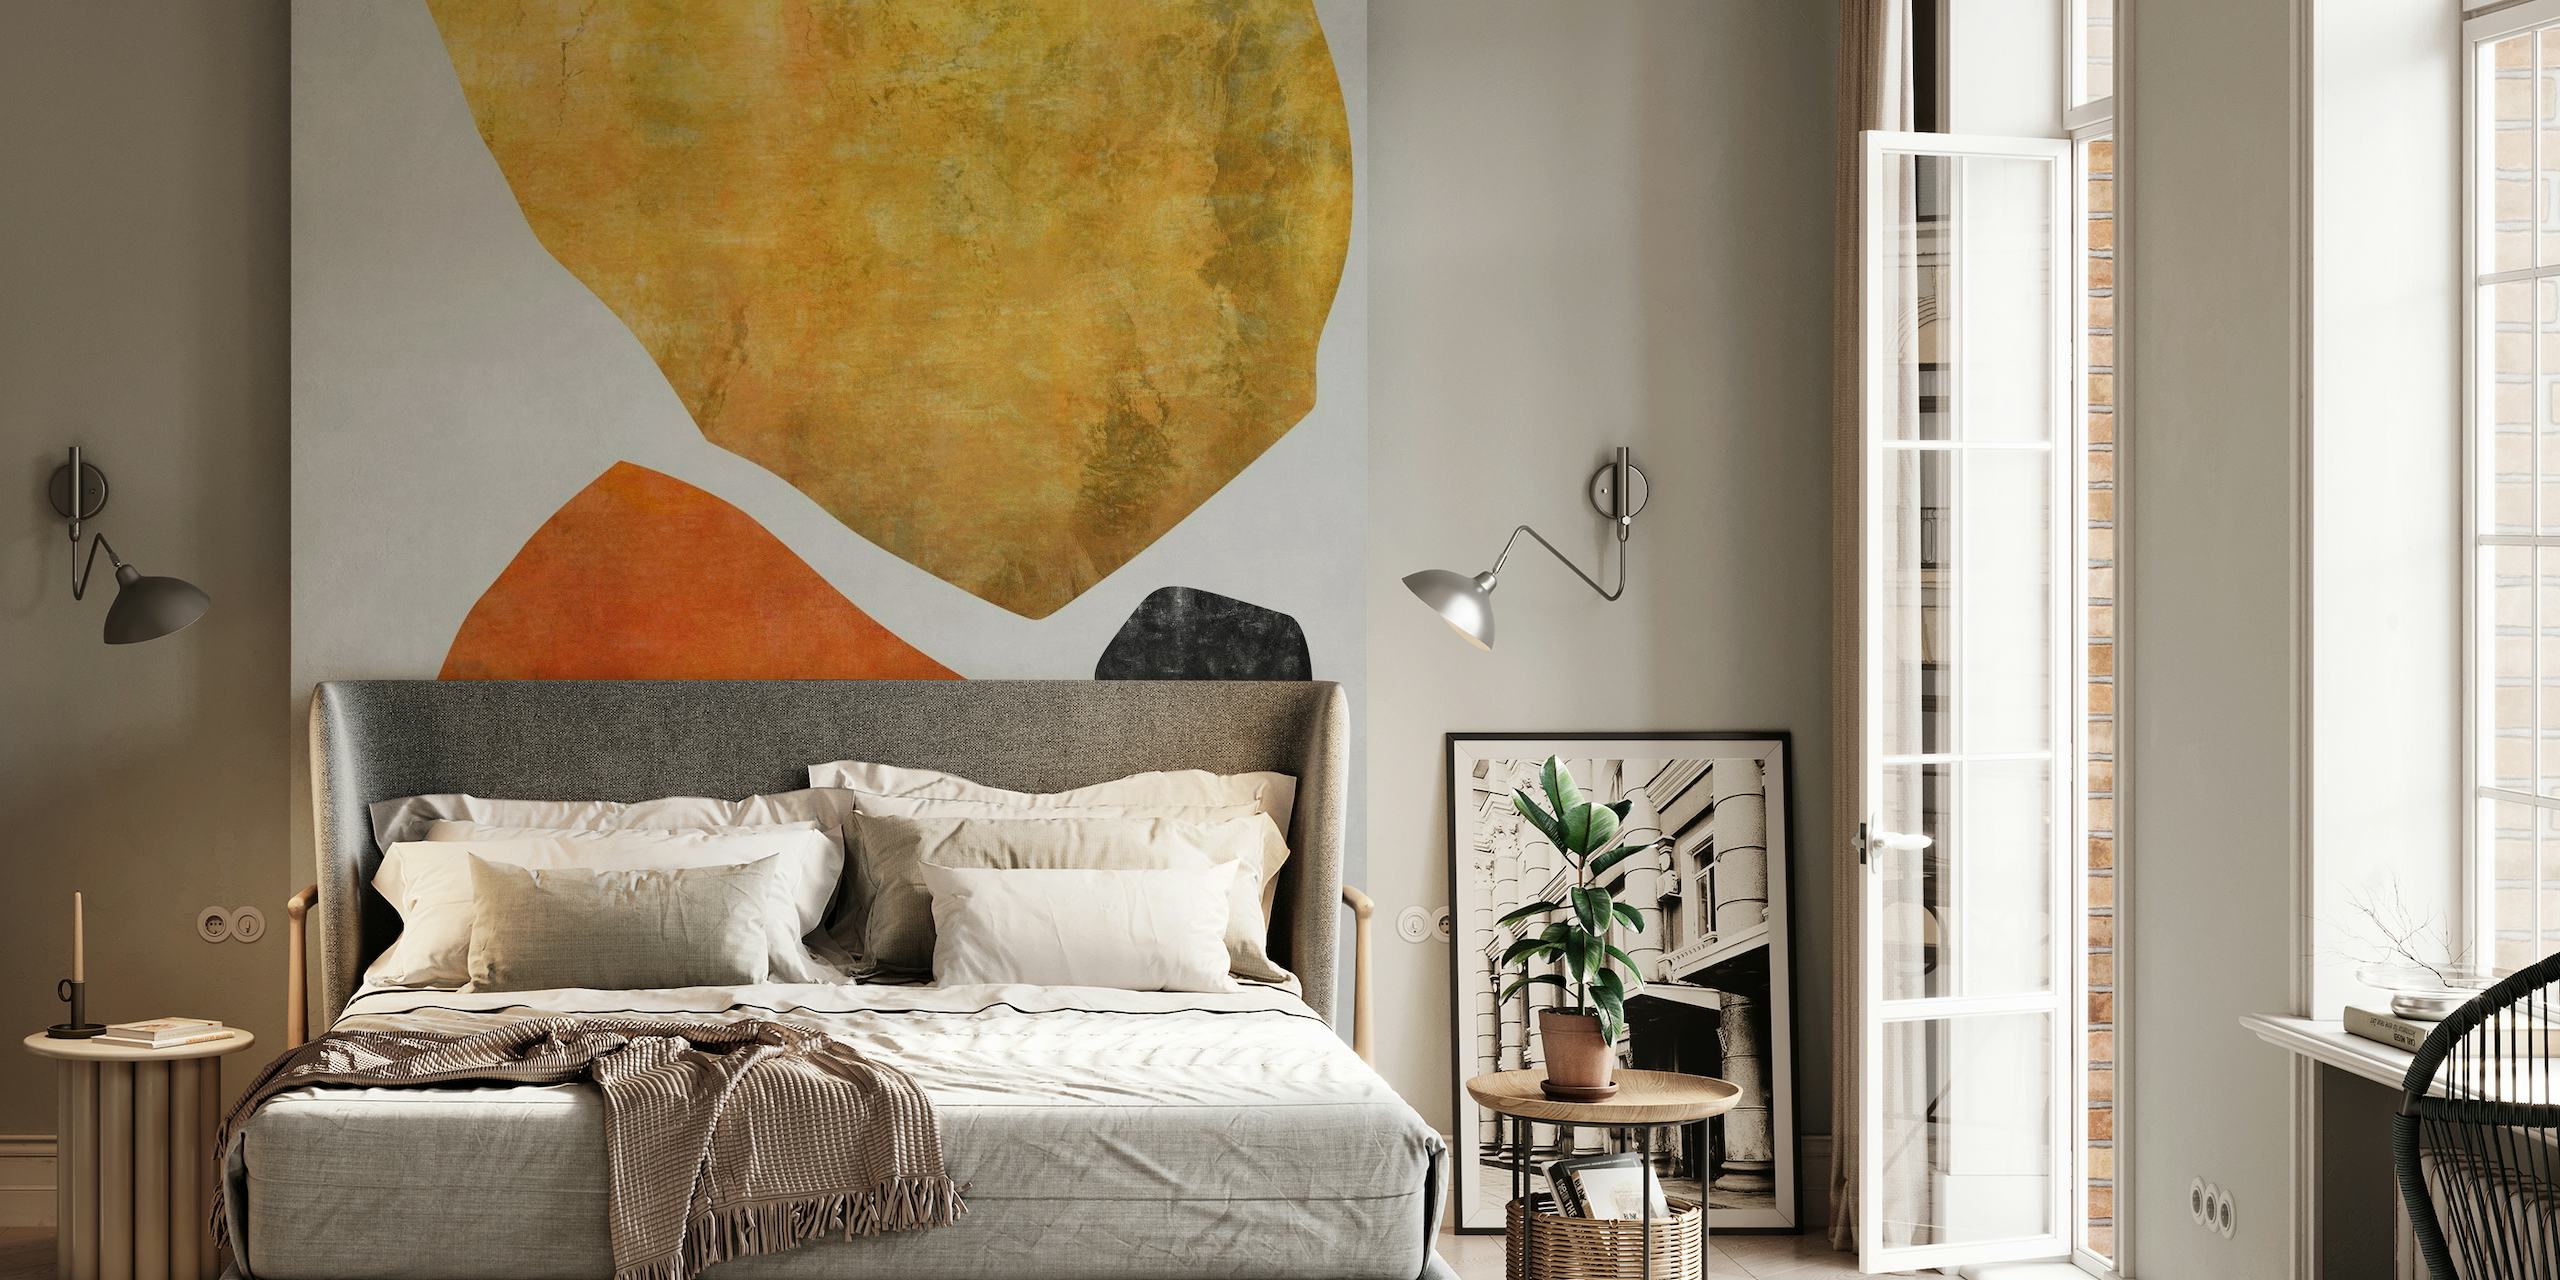 Apstraktni zidni mural Organic Shapes 10 sa zemljanim tonovima i minimalističkim dizajnom